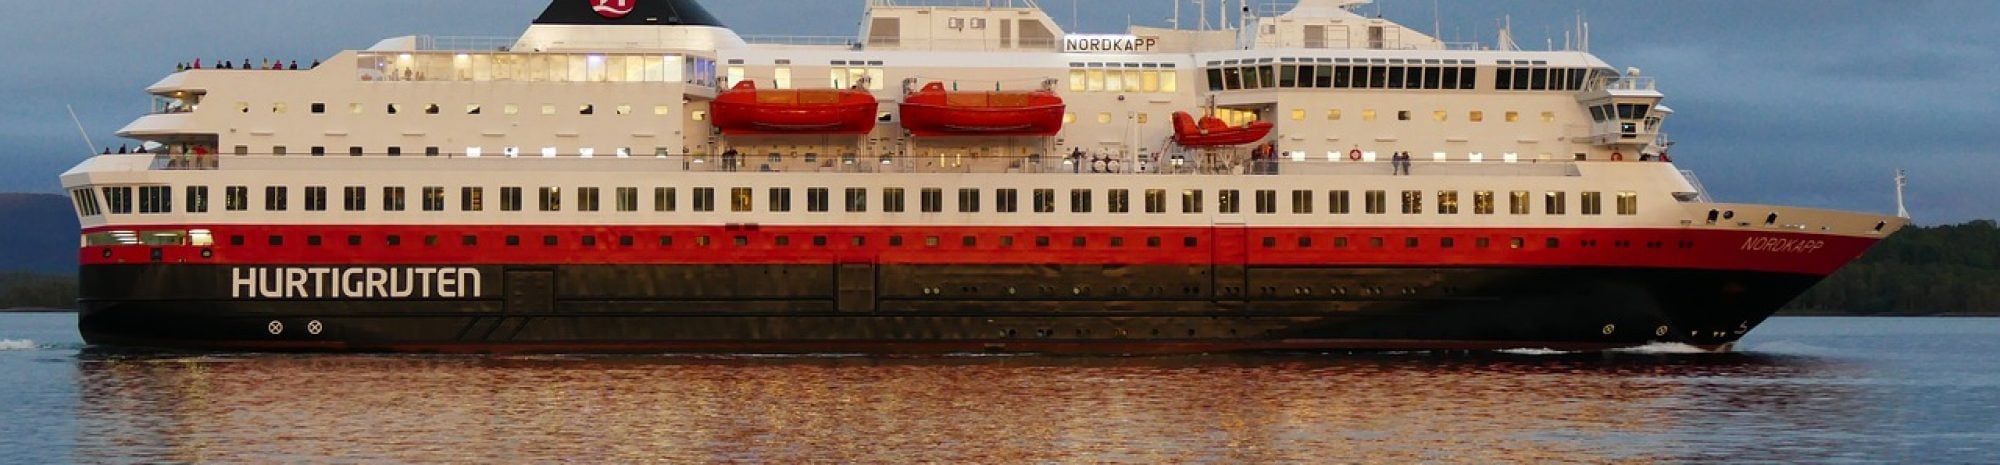 La compagnie de croisière norvégienne Hurtigruten annonce qu’elle va alimenter ses navires avec… du poisson mort!